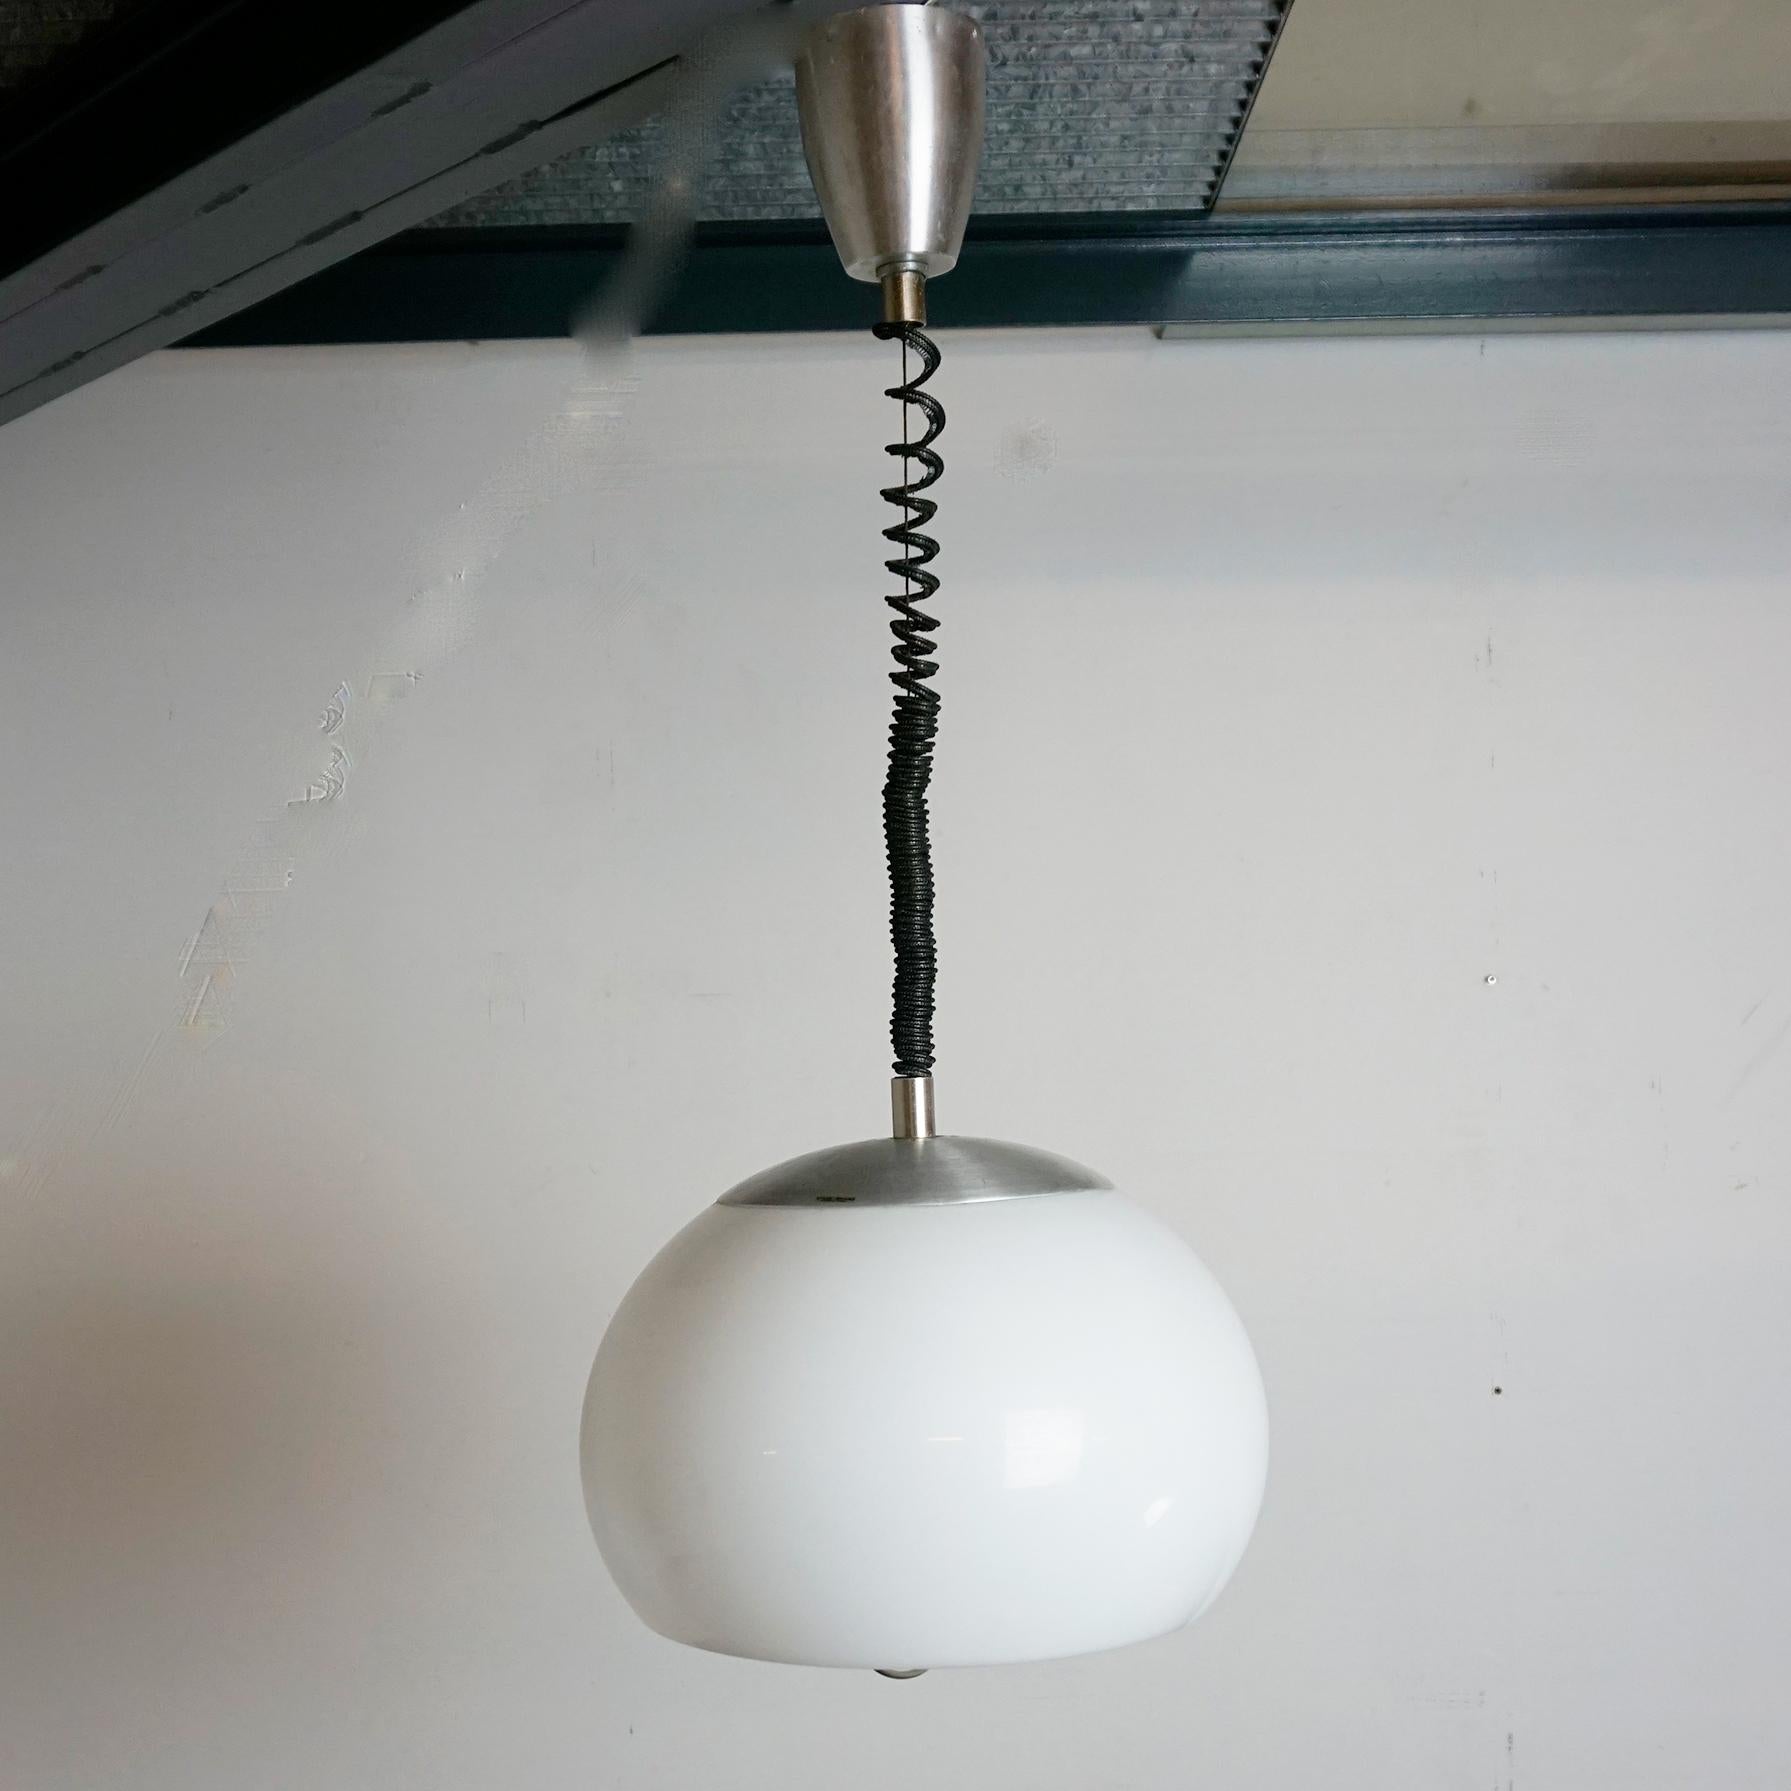 Magnifique lampe suspendue en aluminium et en plexiglas blanc, de style moderne du milieu du siècle dernier. Cette pièce fantastique a été conçue par Stilux en Italie dans les années 1960.
Il comporte un câble de suspension en forme de cordon